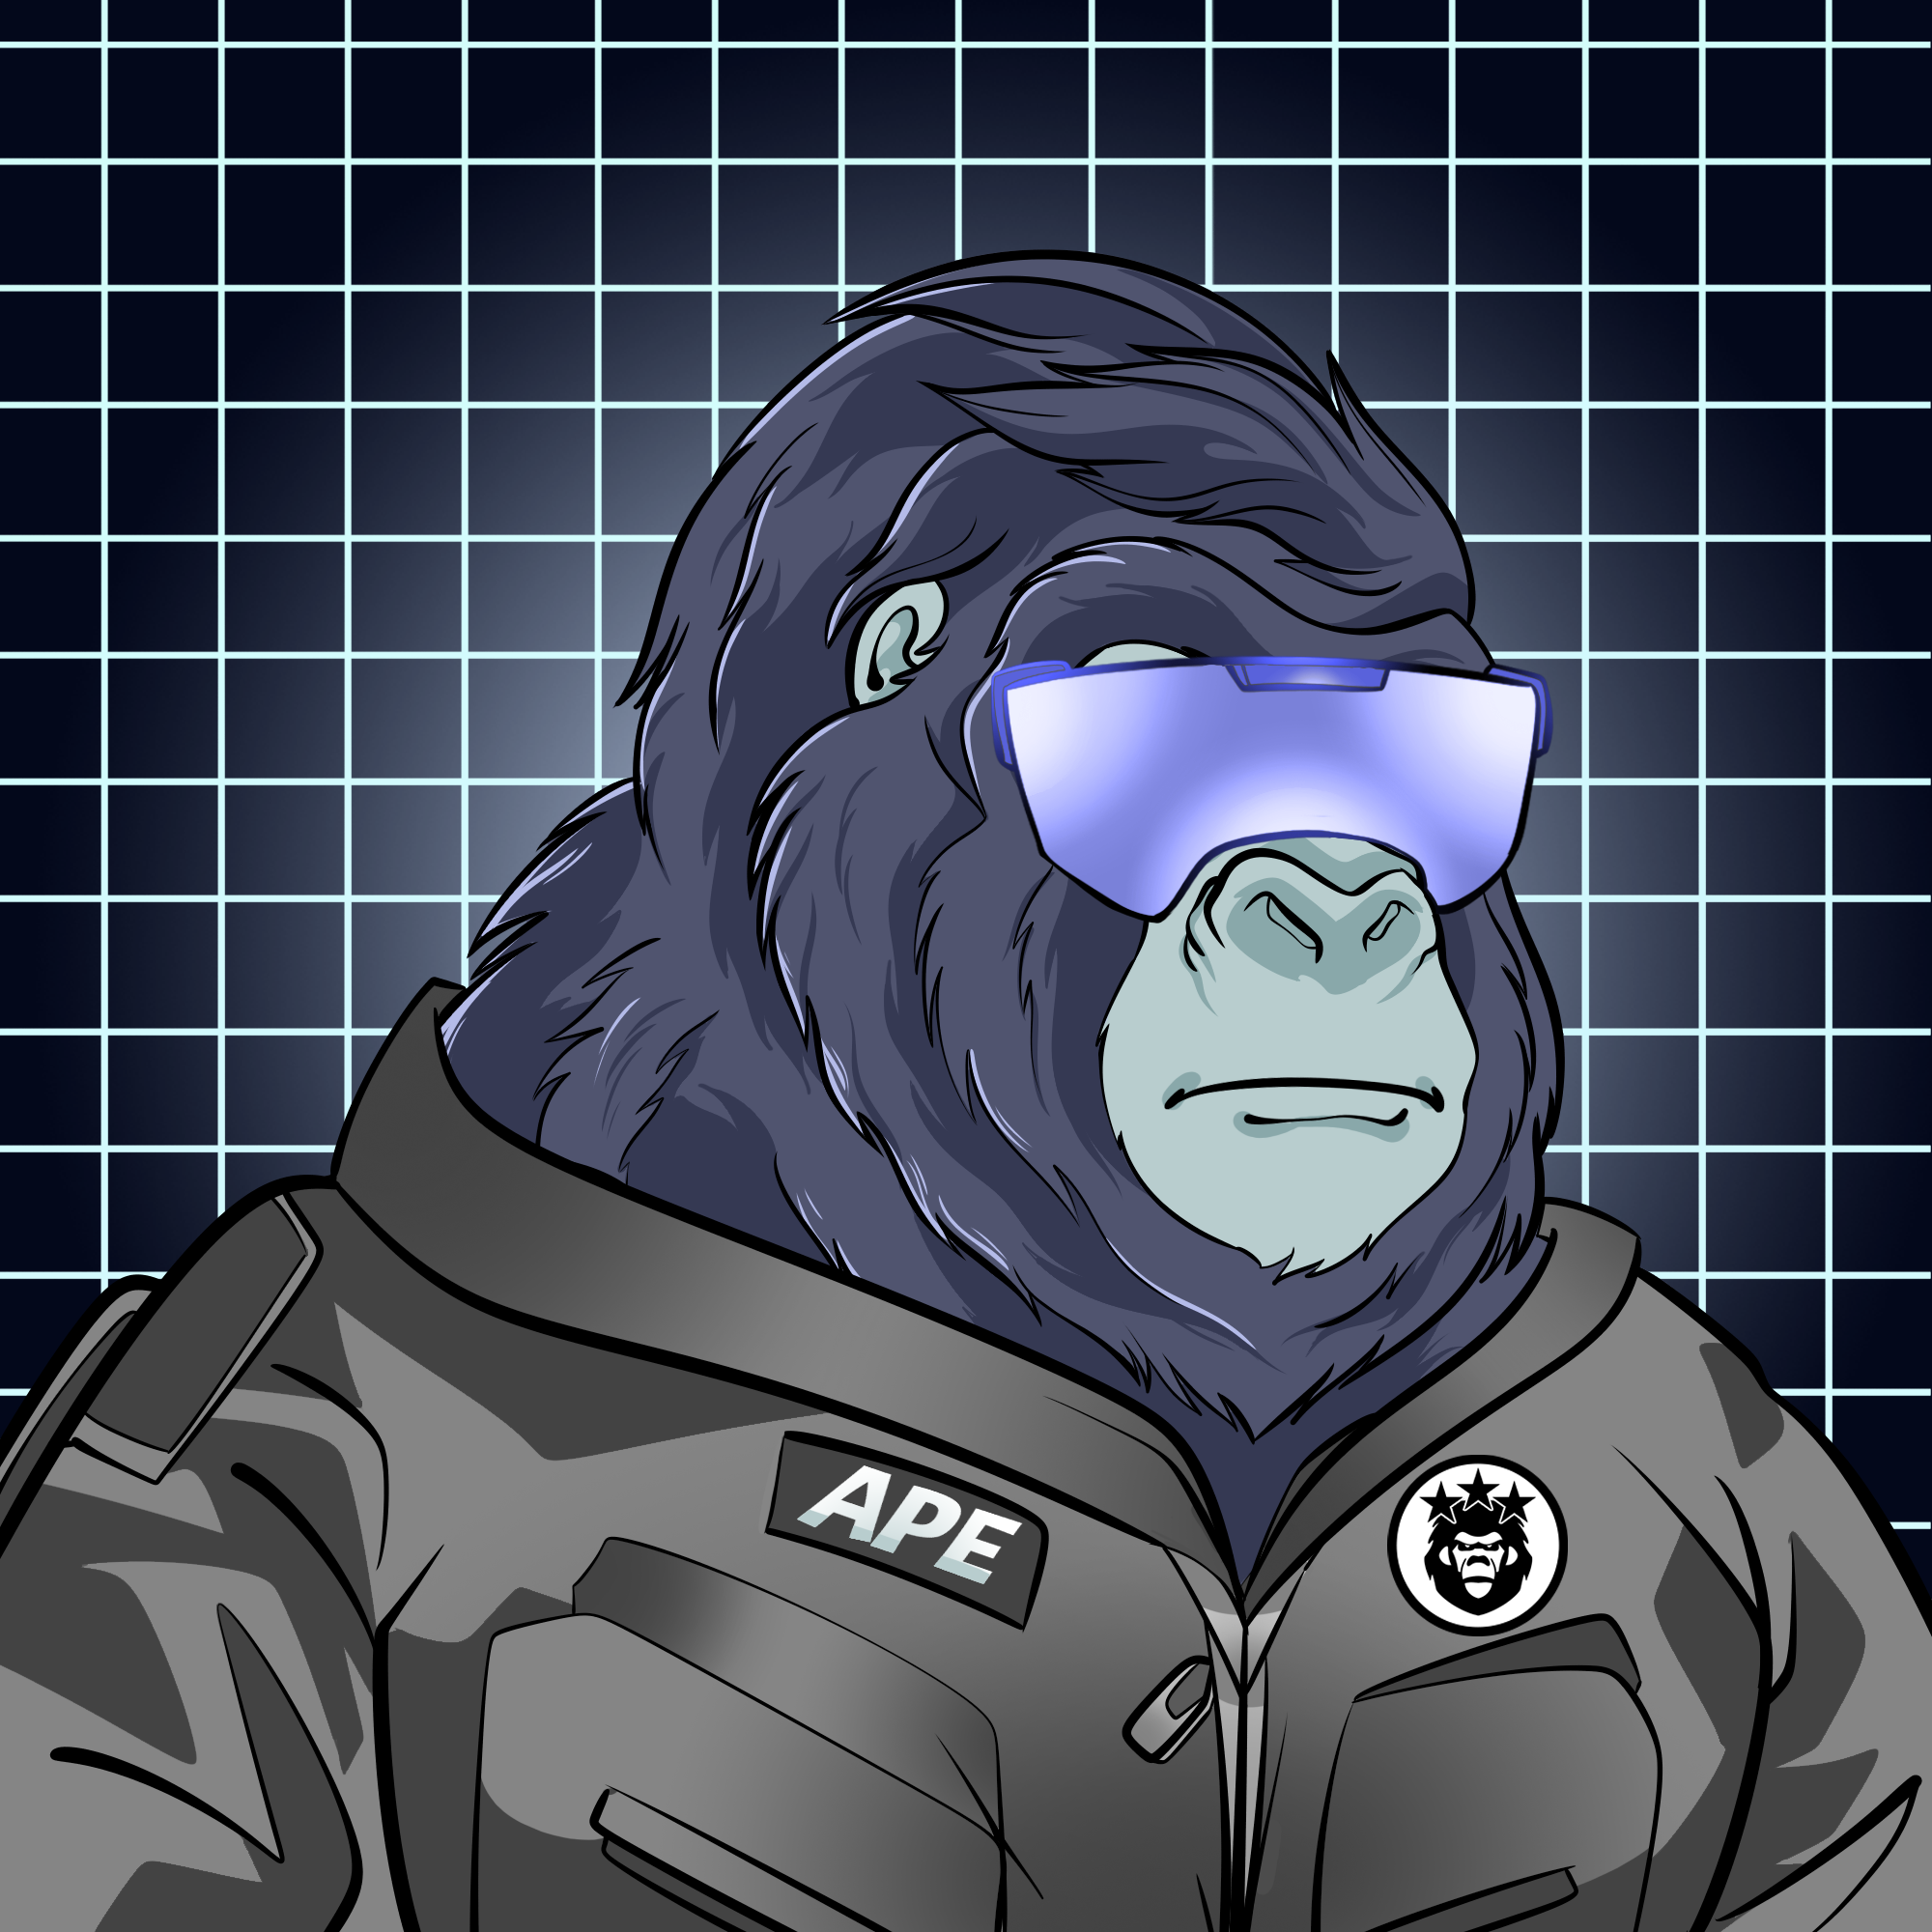 Ape#1005